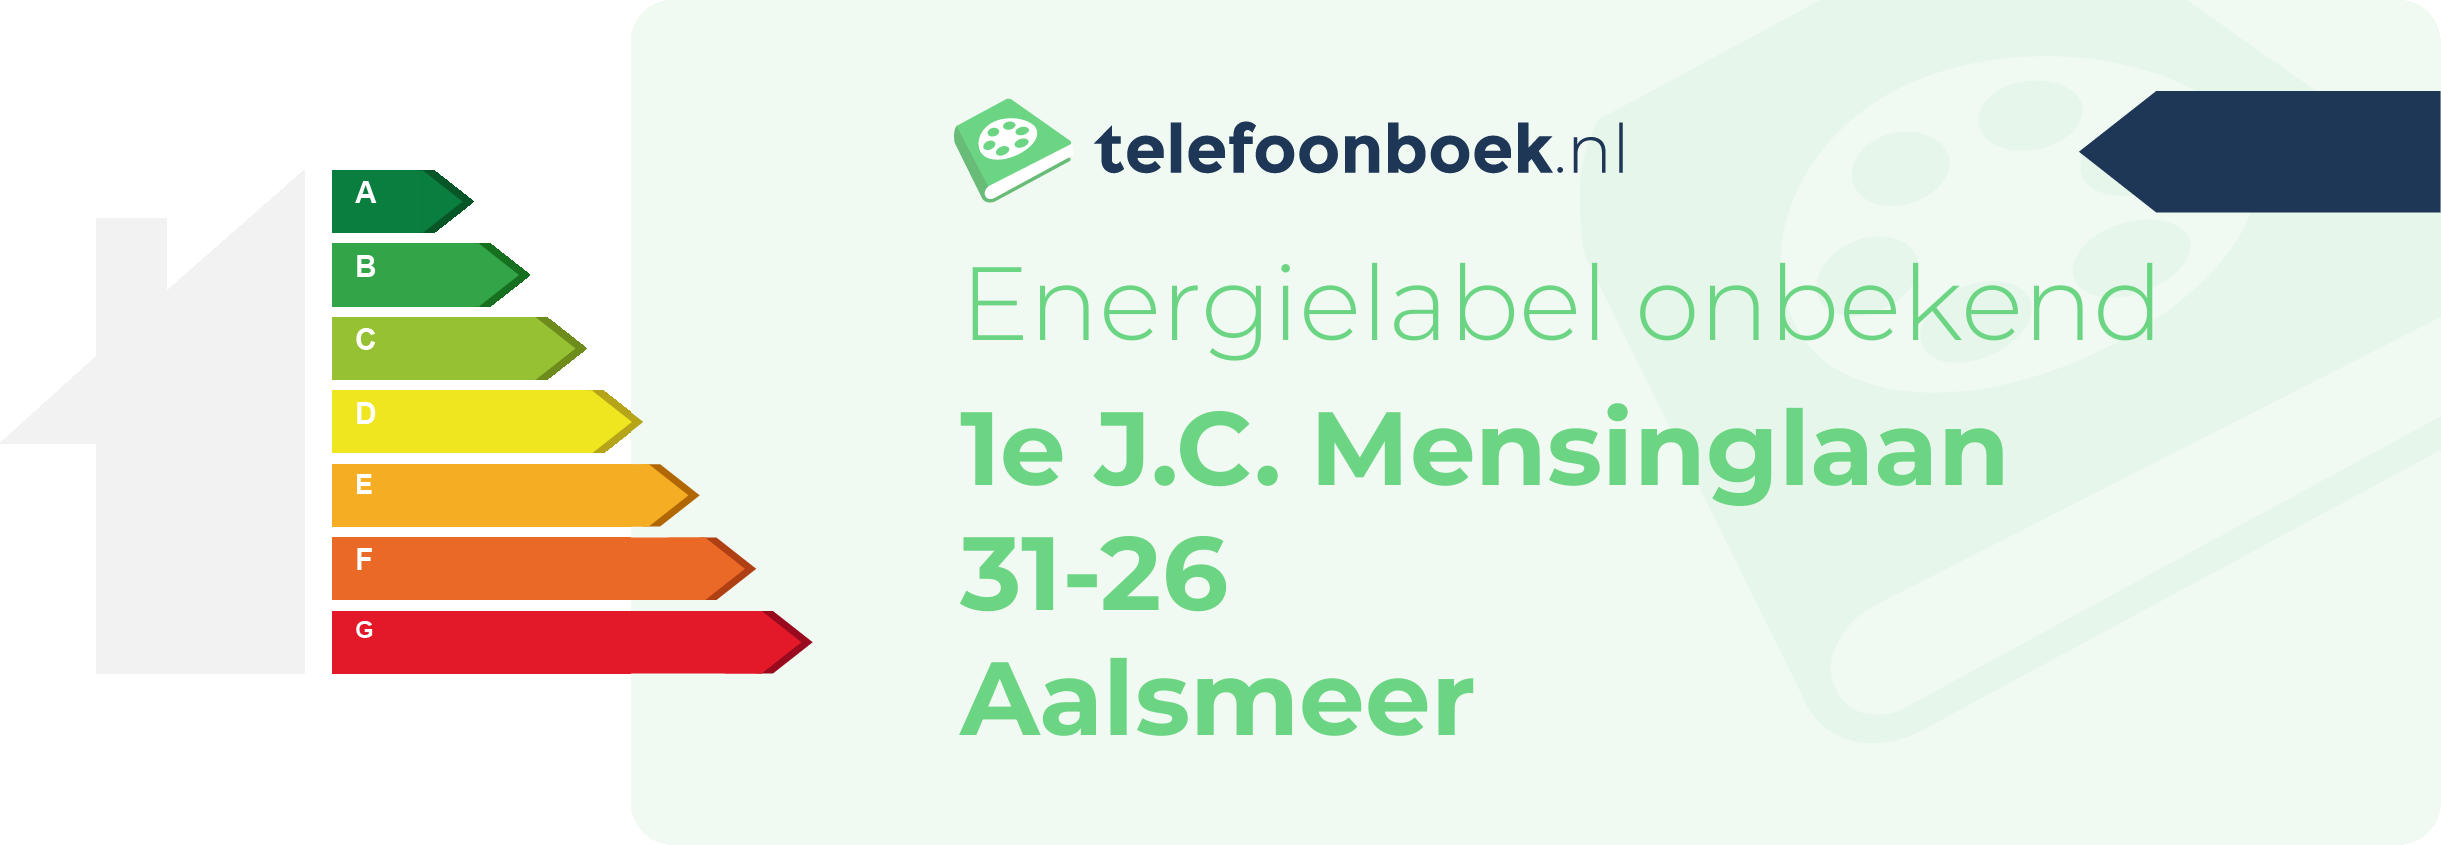 Energielabel 1e J.C. Mensinglaan 31-26 Aalsmeer